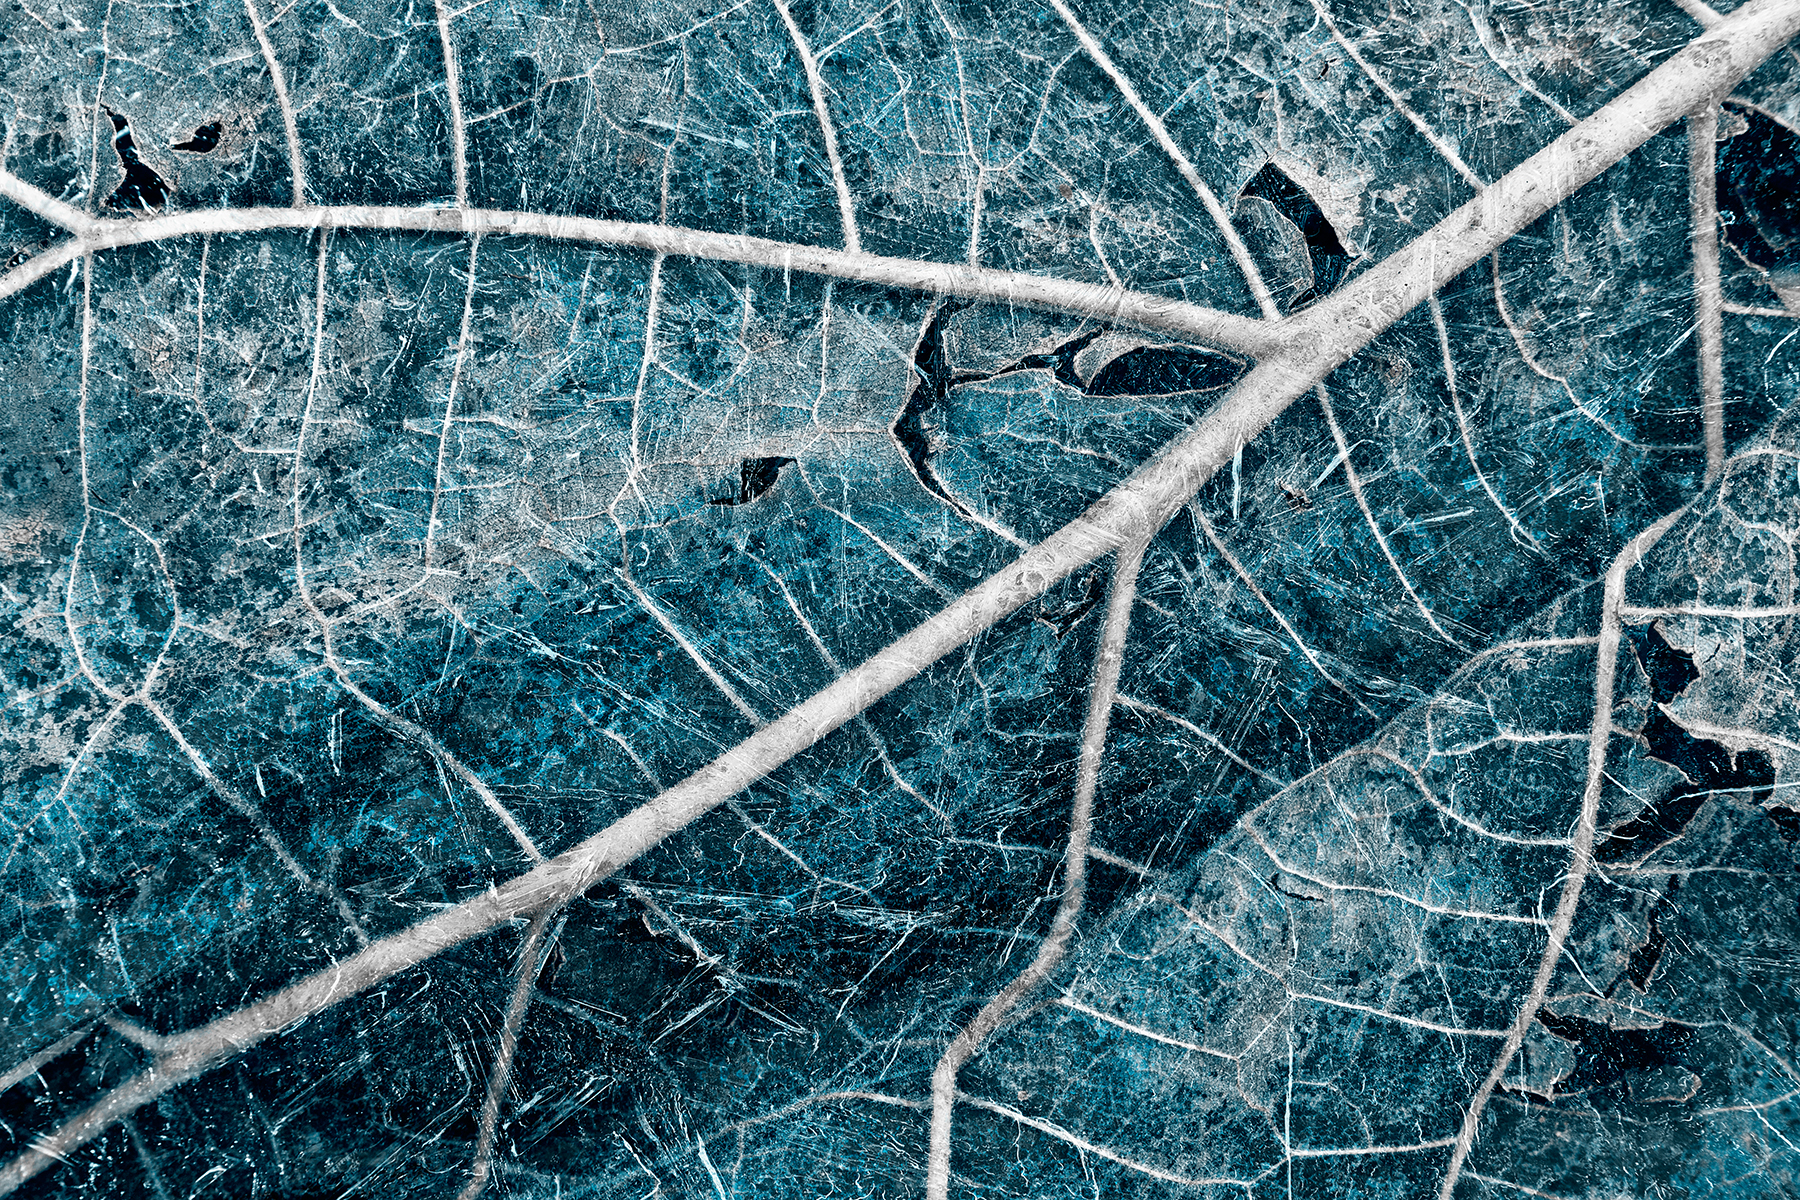 Frozen winter leaf photo